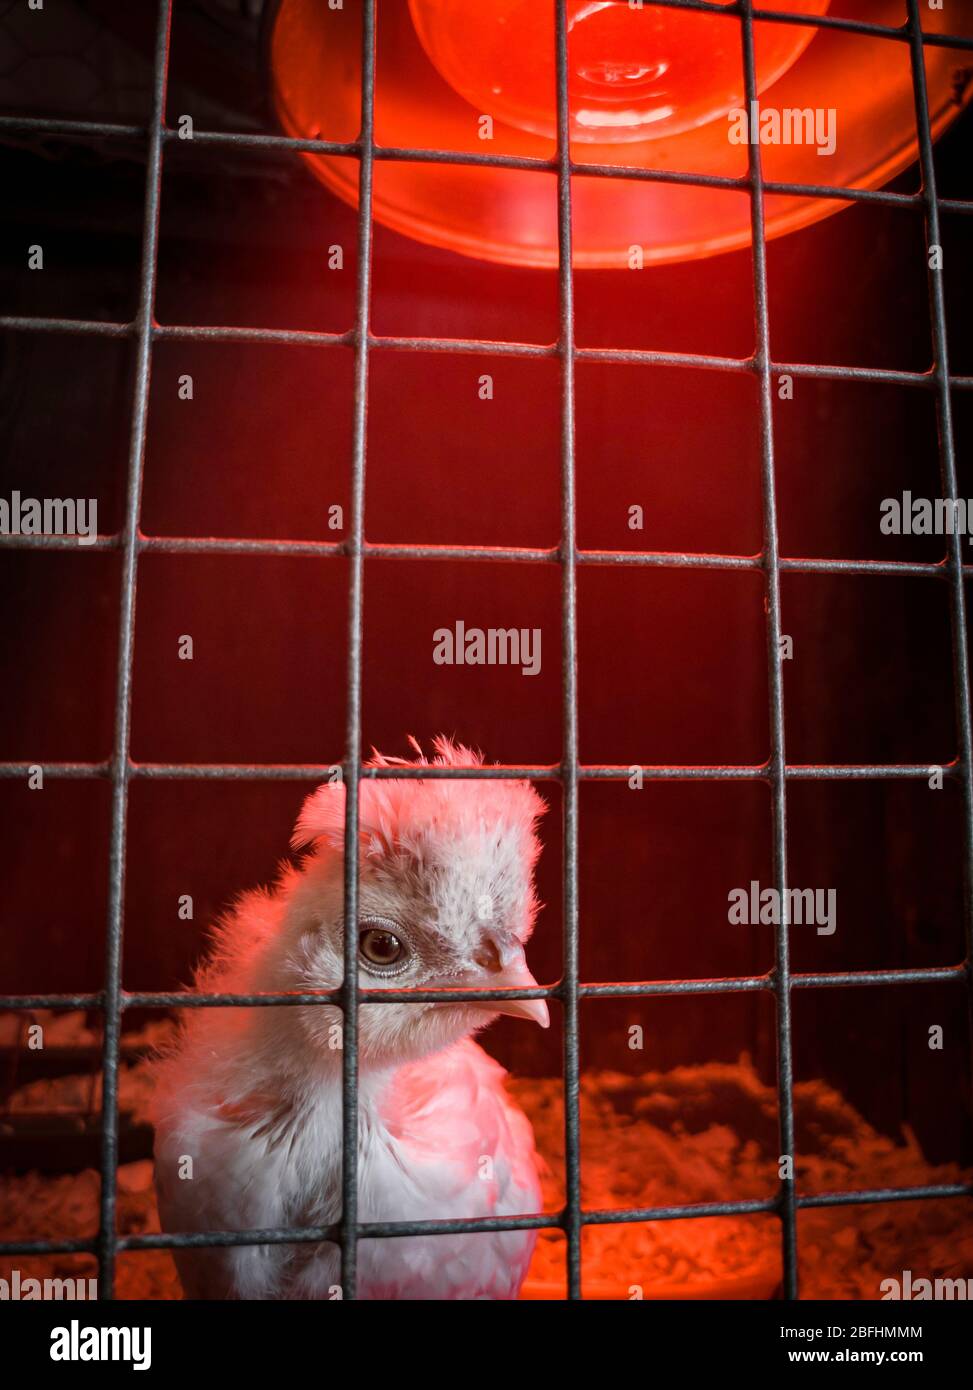 Selbstisolierung / Quarantäne Konzept Bild. Neu geborenes Küken unter einer Wärmestampe, die durch die Gitter seines Käfigs blickt. Sussex, England, Großbritannien Stockfoto